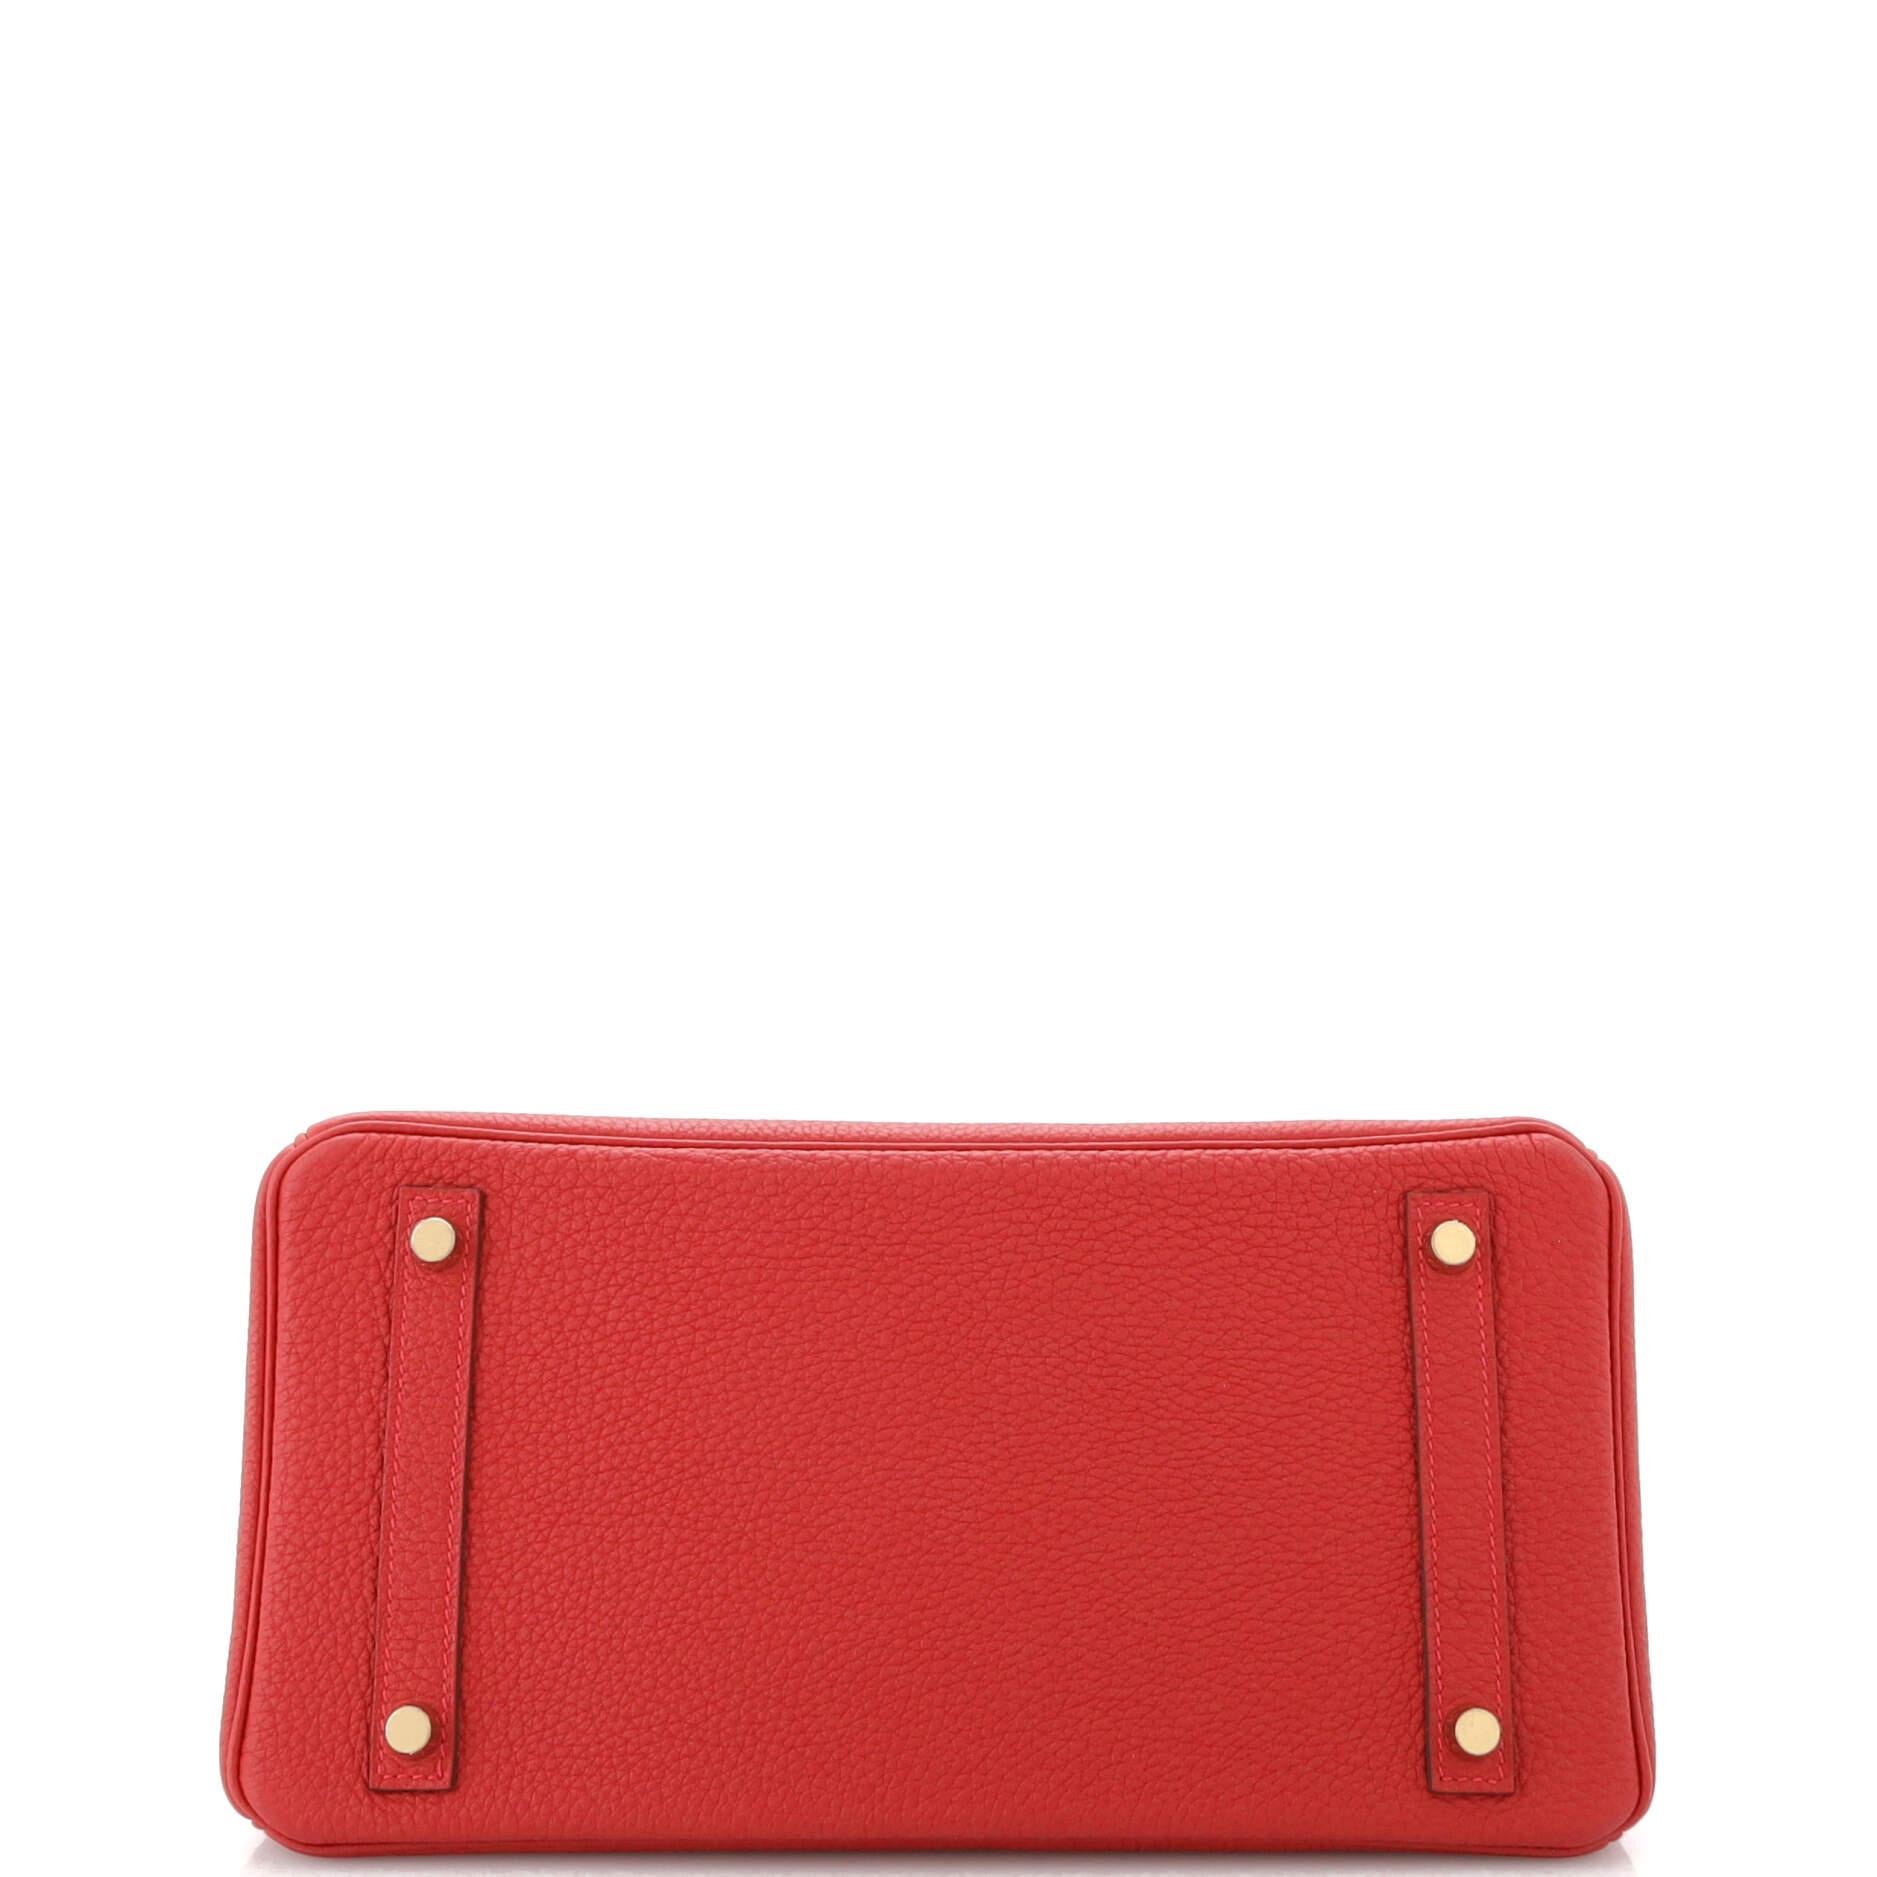 Hermes Birkin Handbag Rouge Vif Togo with Gold Hardware 30 1